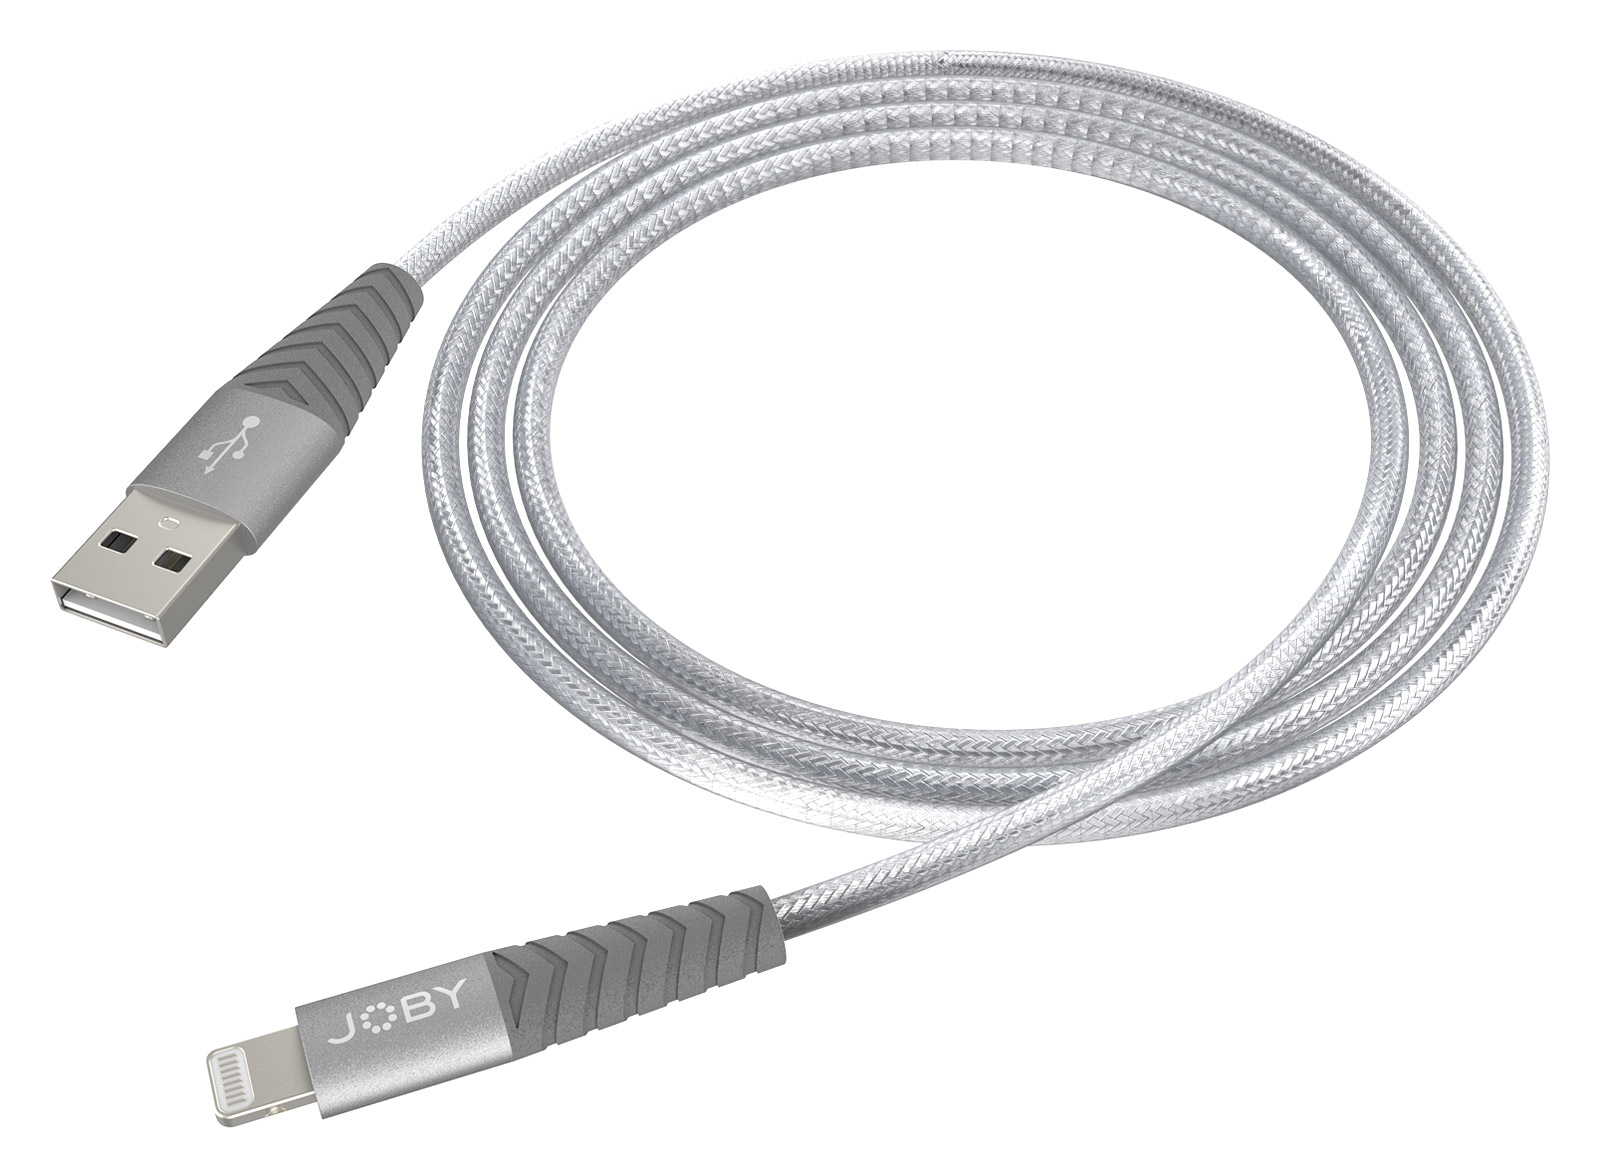 Chargeur Rapide USB C pour iPhone【Certifié MFi Apple】20W PD 3.0 USB C Mural  Adaptateur Alimentation de Charge avec 2M Lightning Chargeur Câble